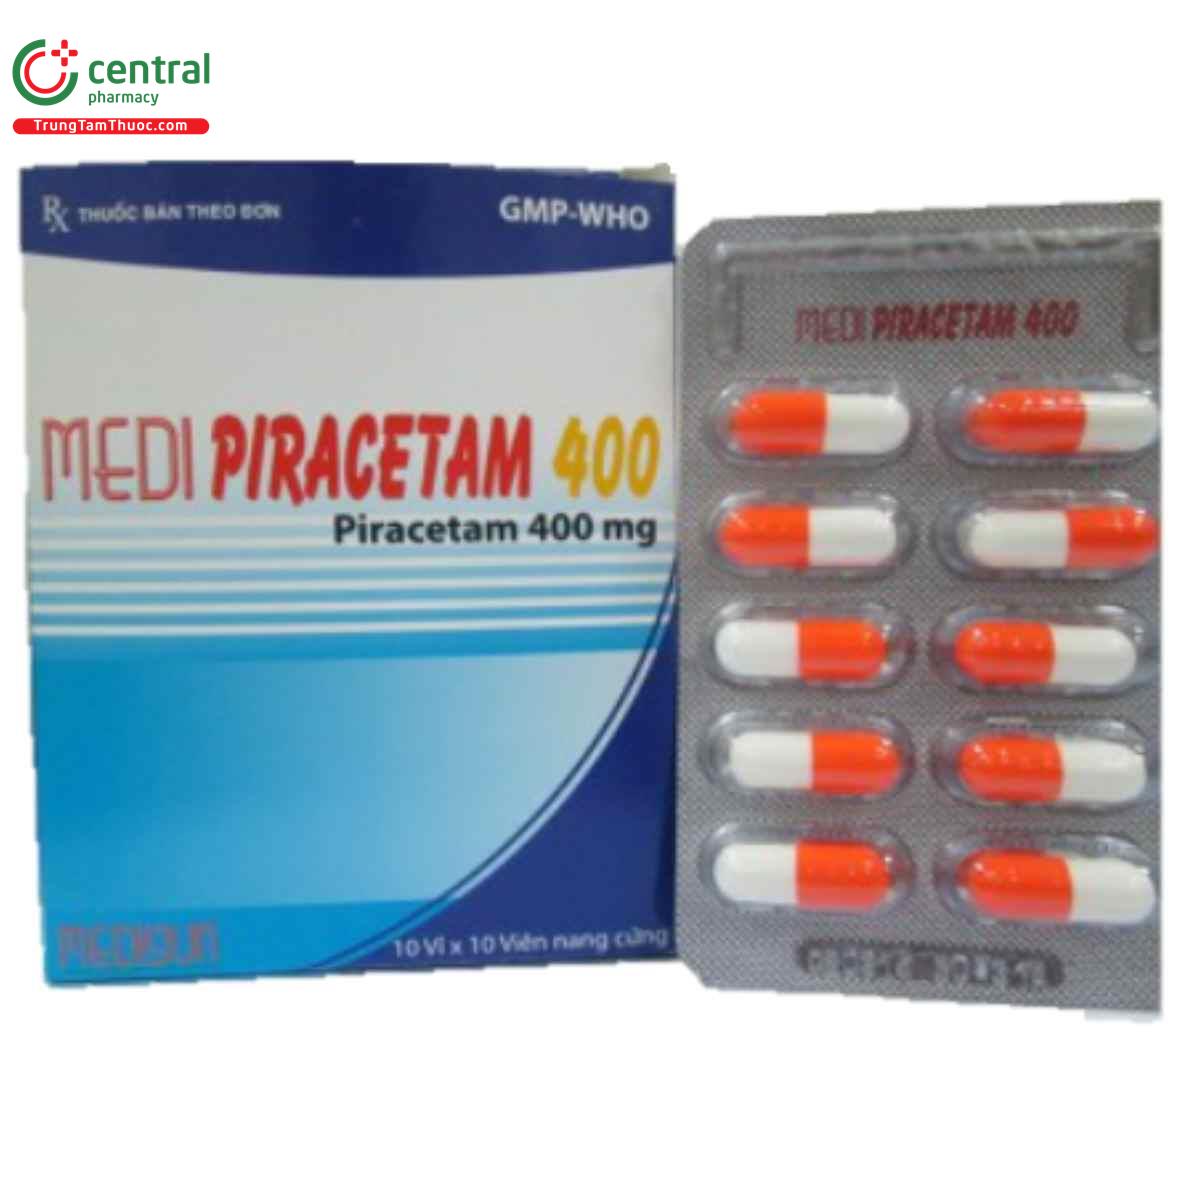 thuoc medi piracetam 400 1 F2787